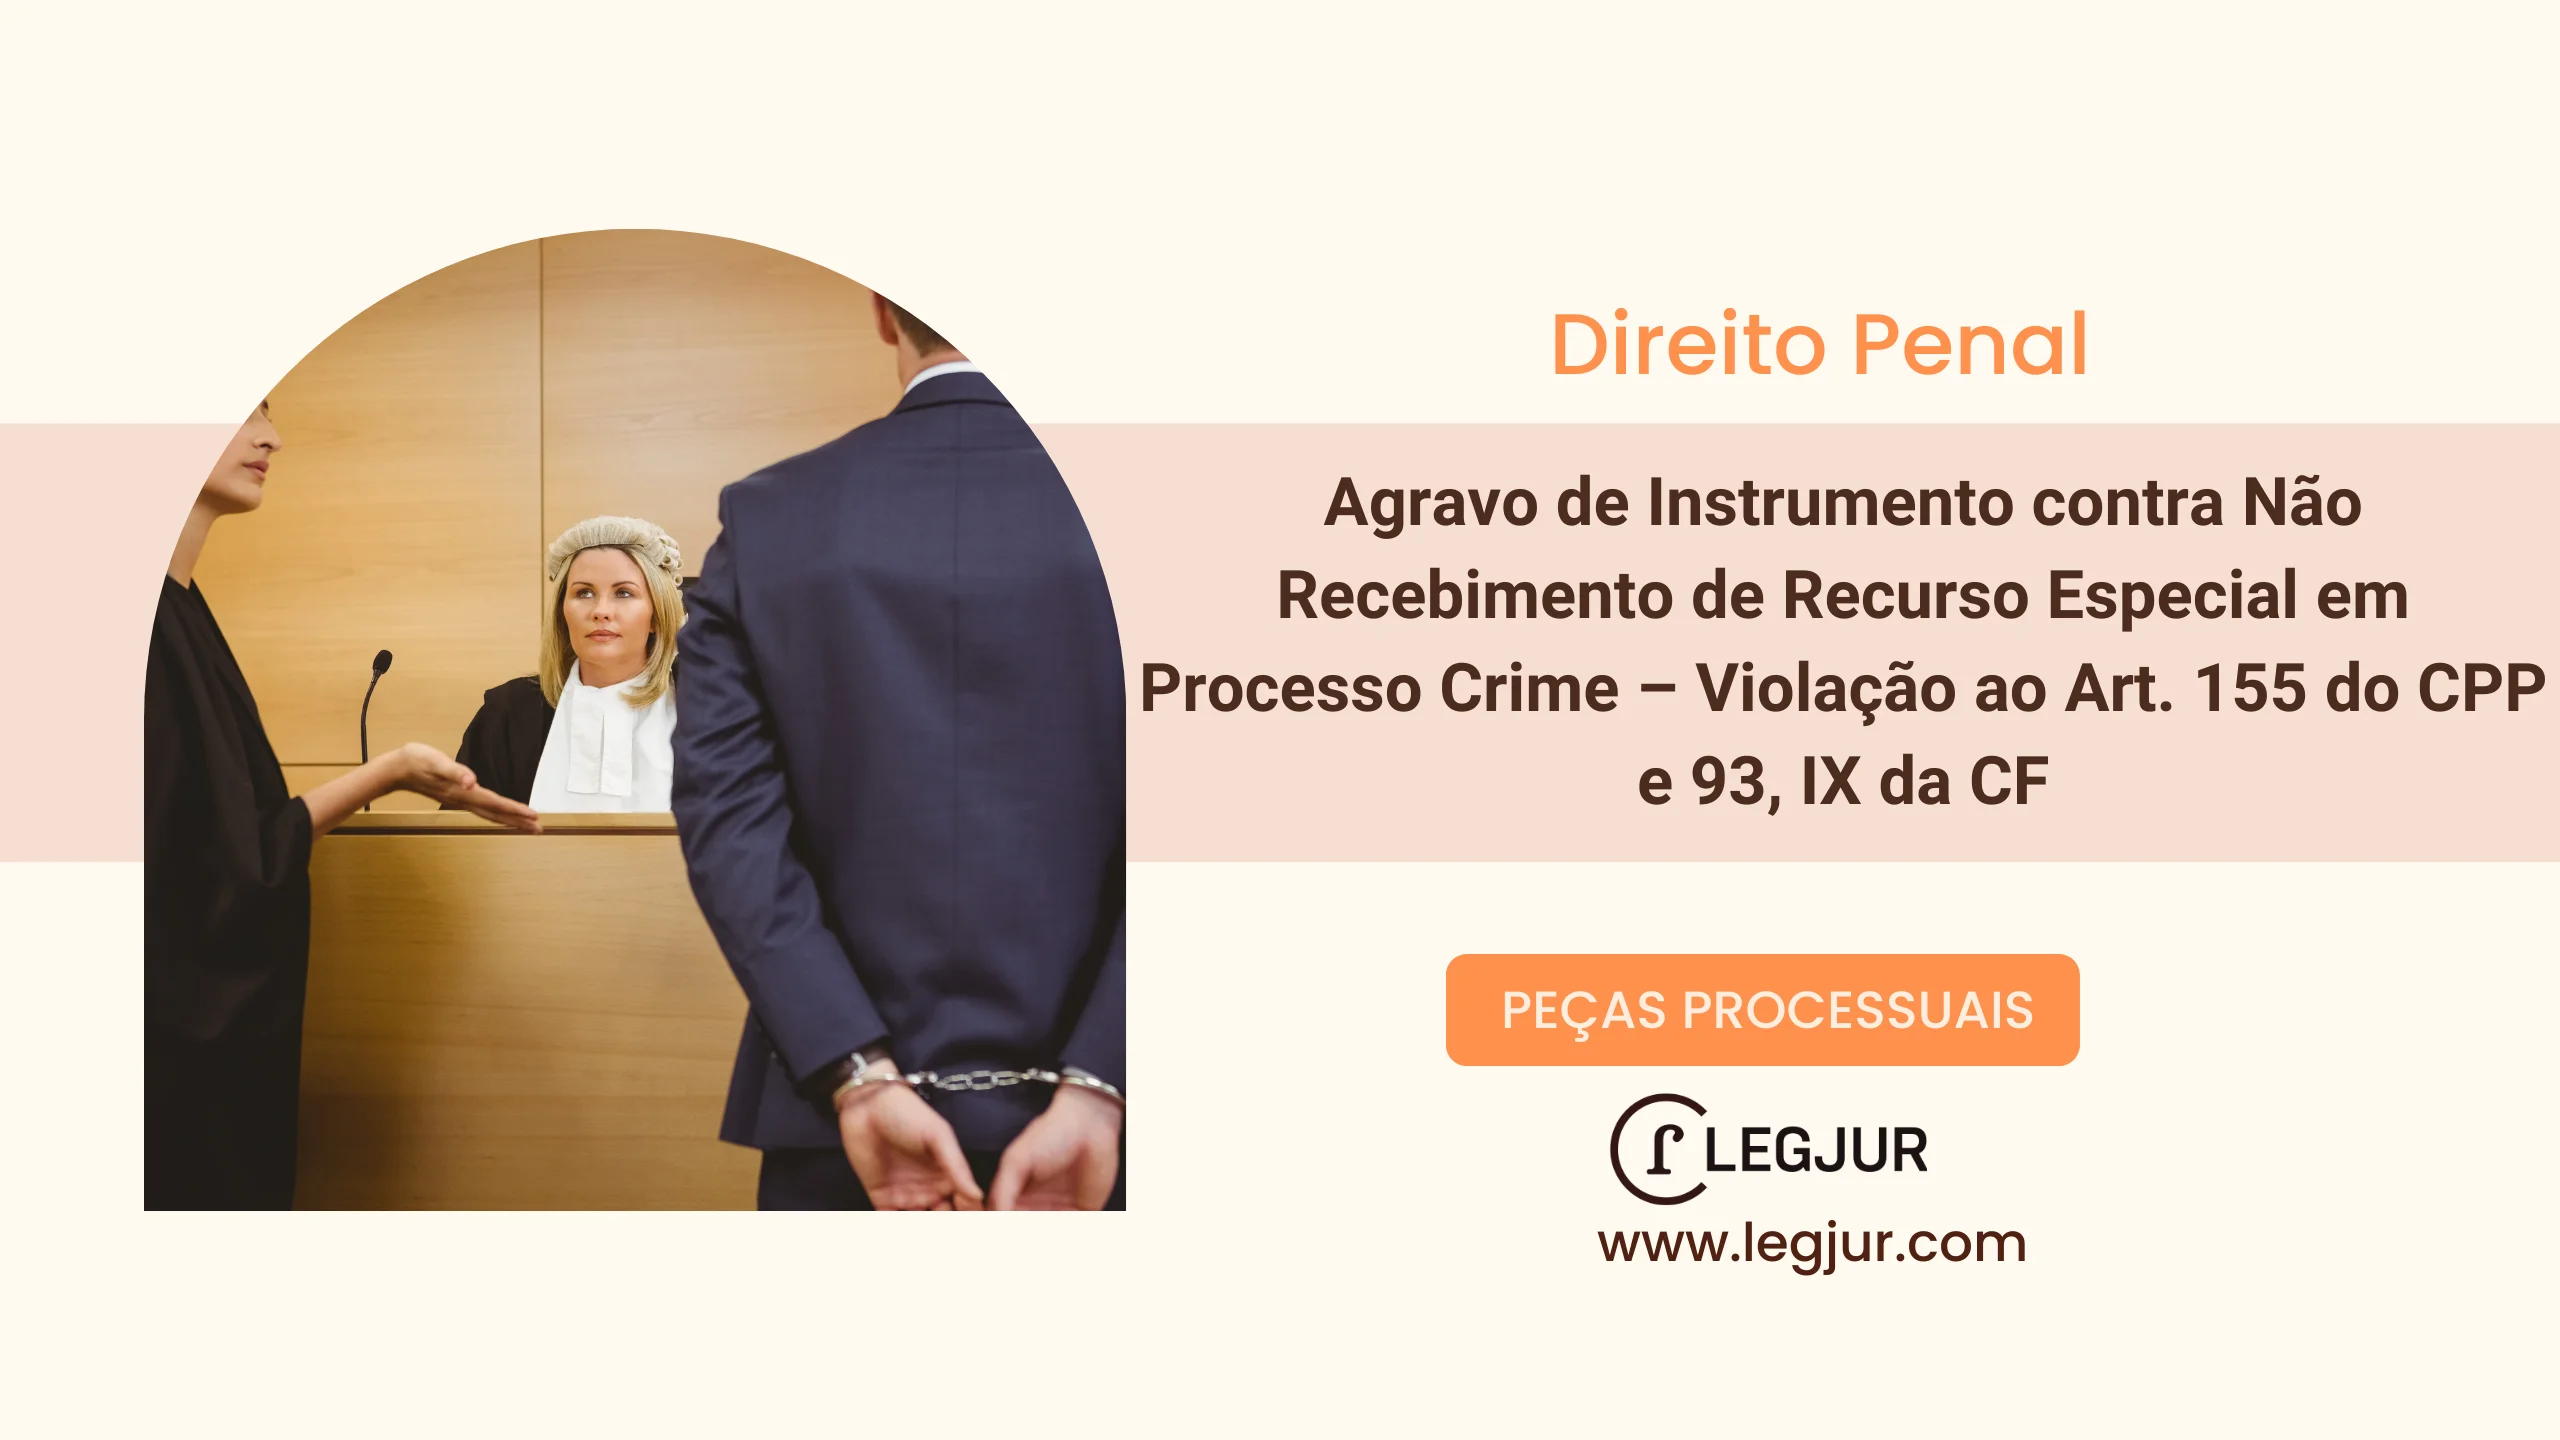 Agravo de Instrumento contra Não Recebimento de Recurso Especial em Processo Crime – Violação ao Art. 155 do CPP e 93, IX da CF